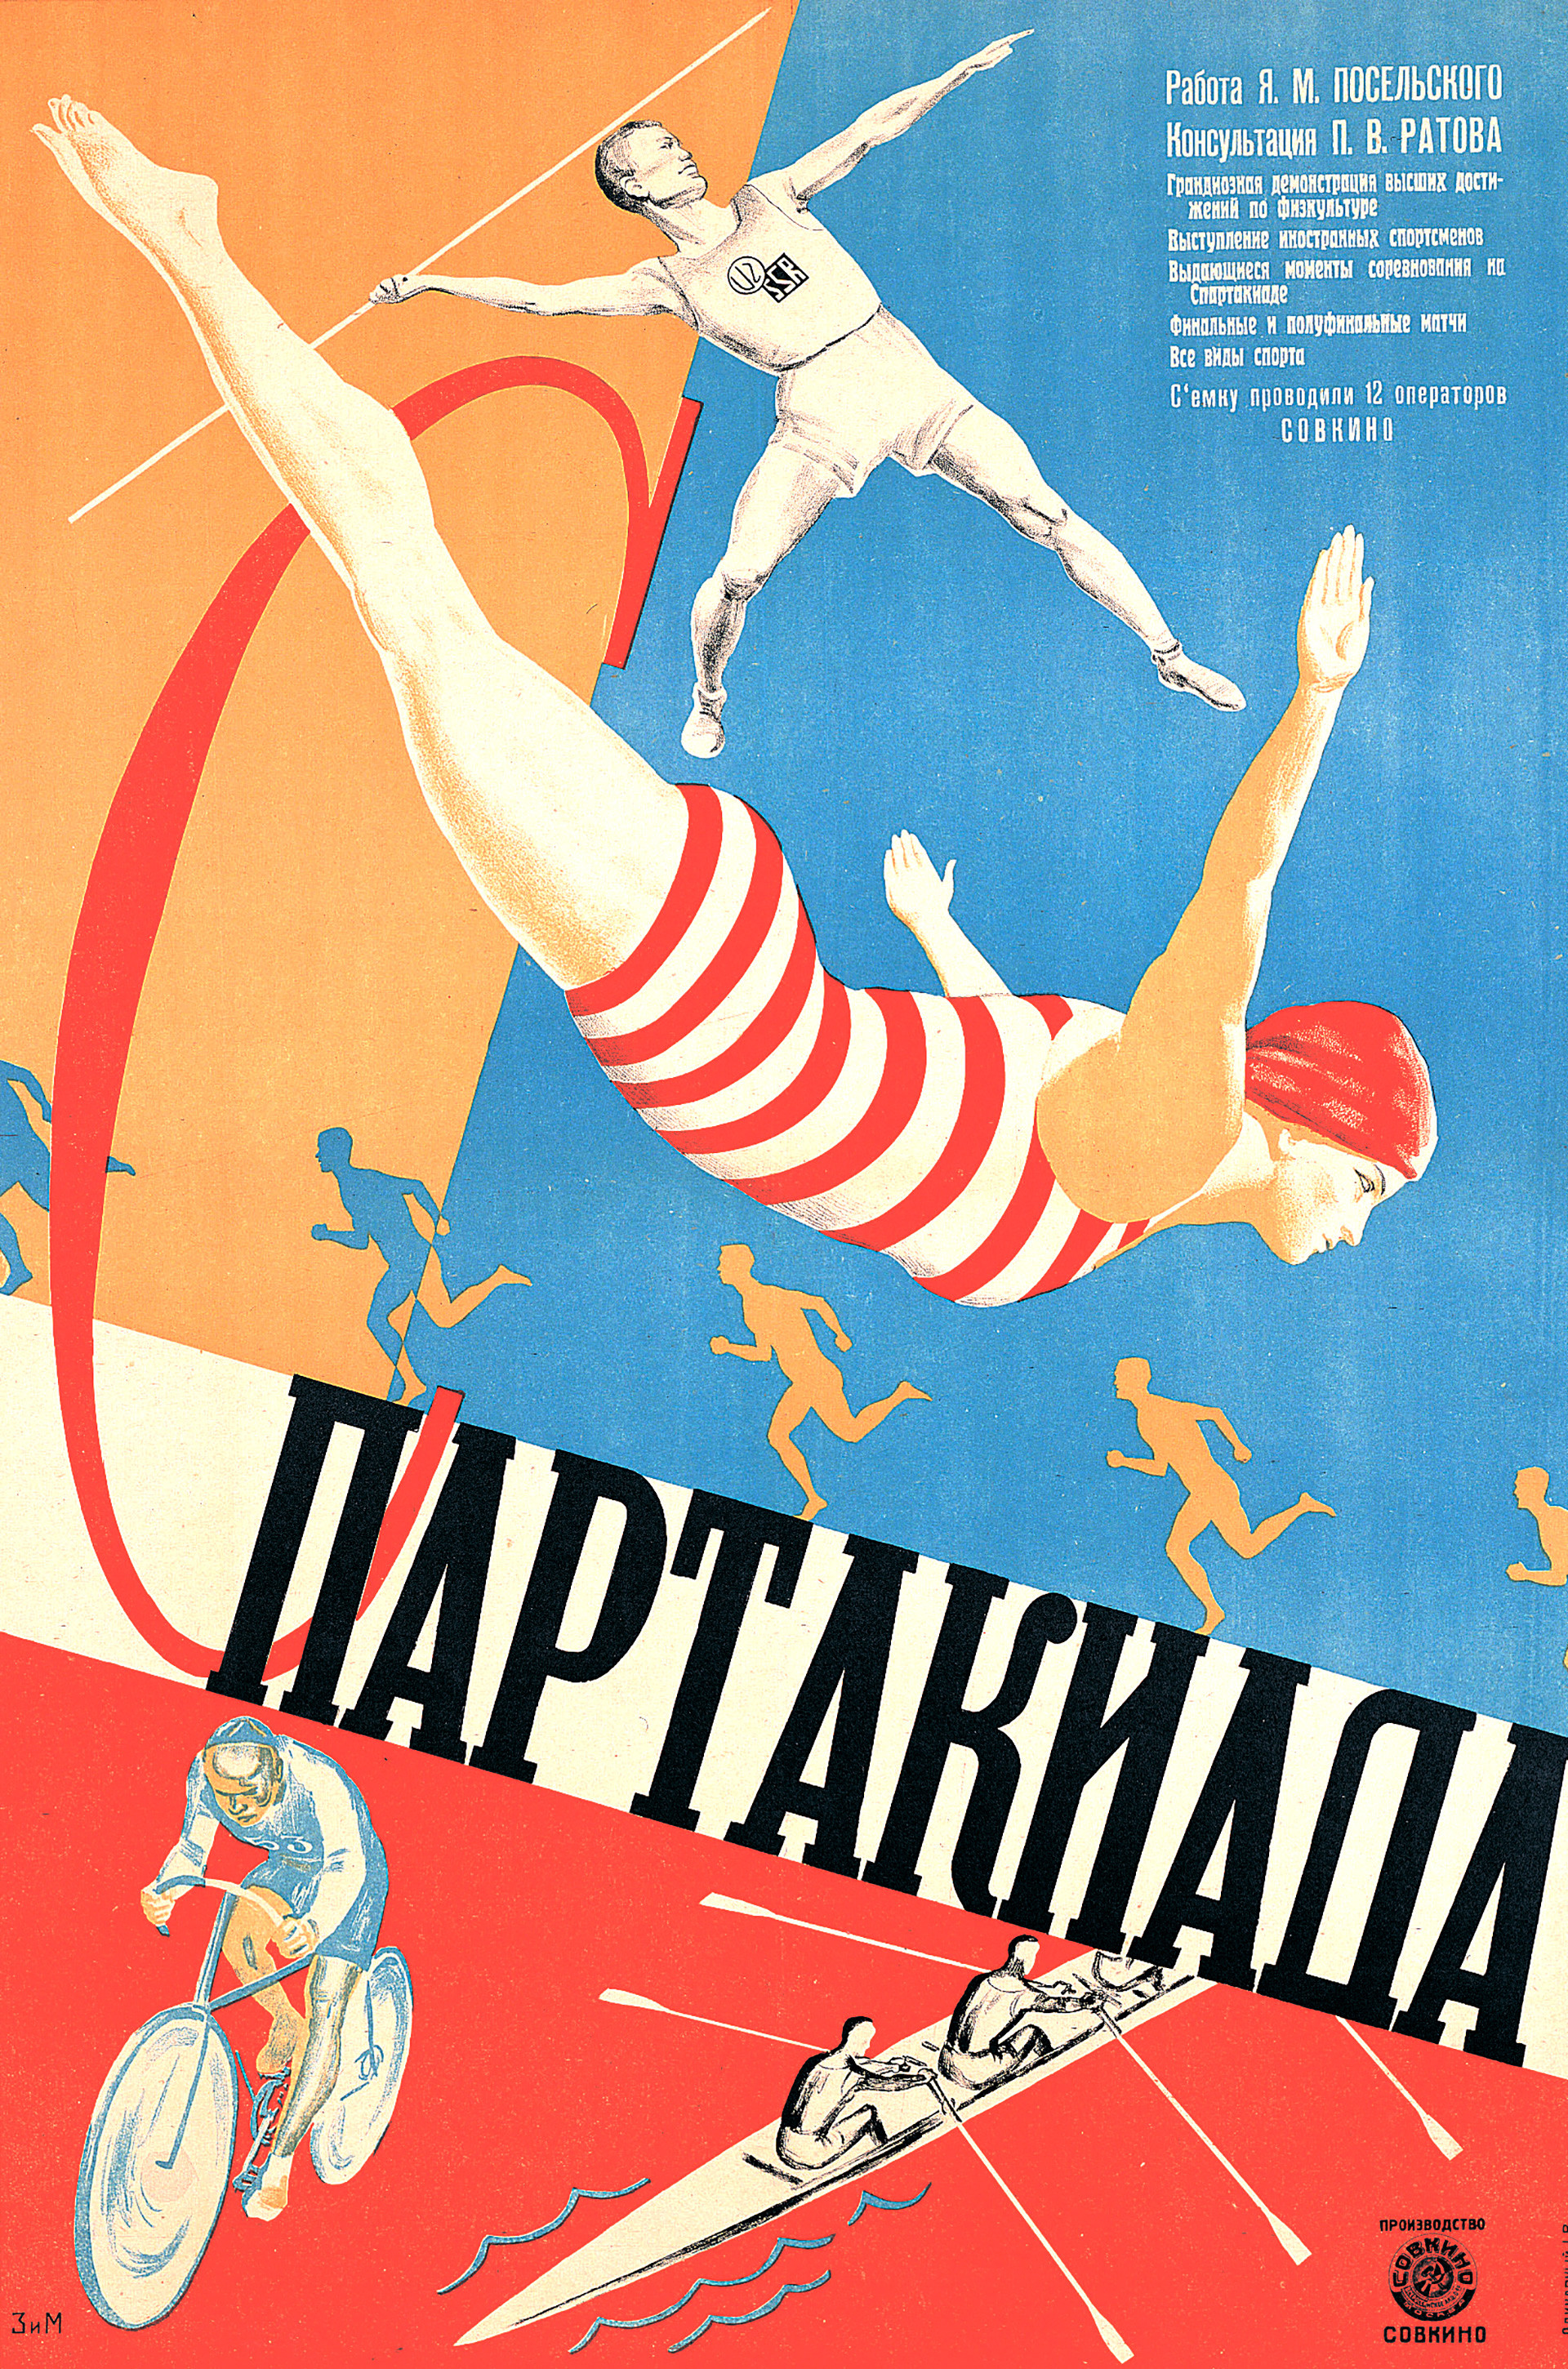 ZIM, affiche pour Spartakiadе, 1927